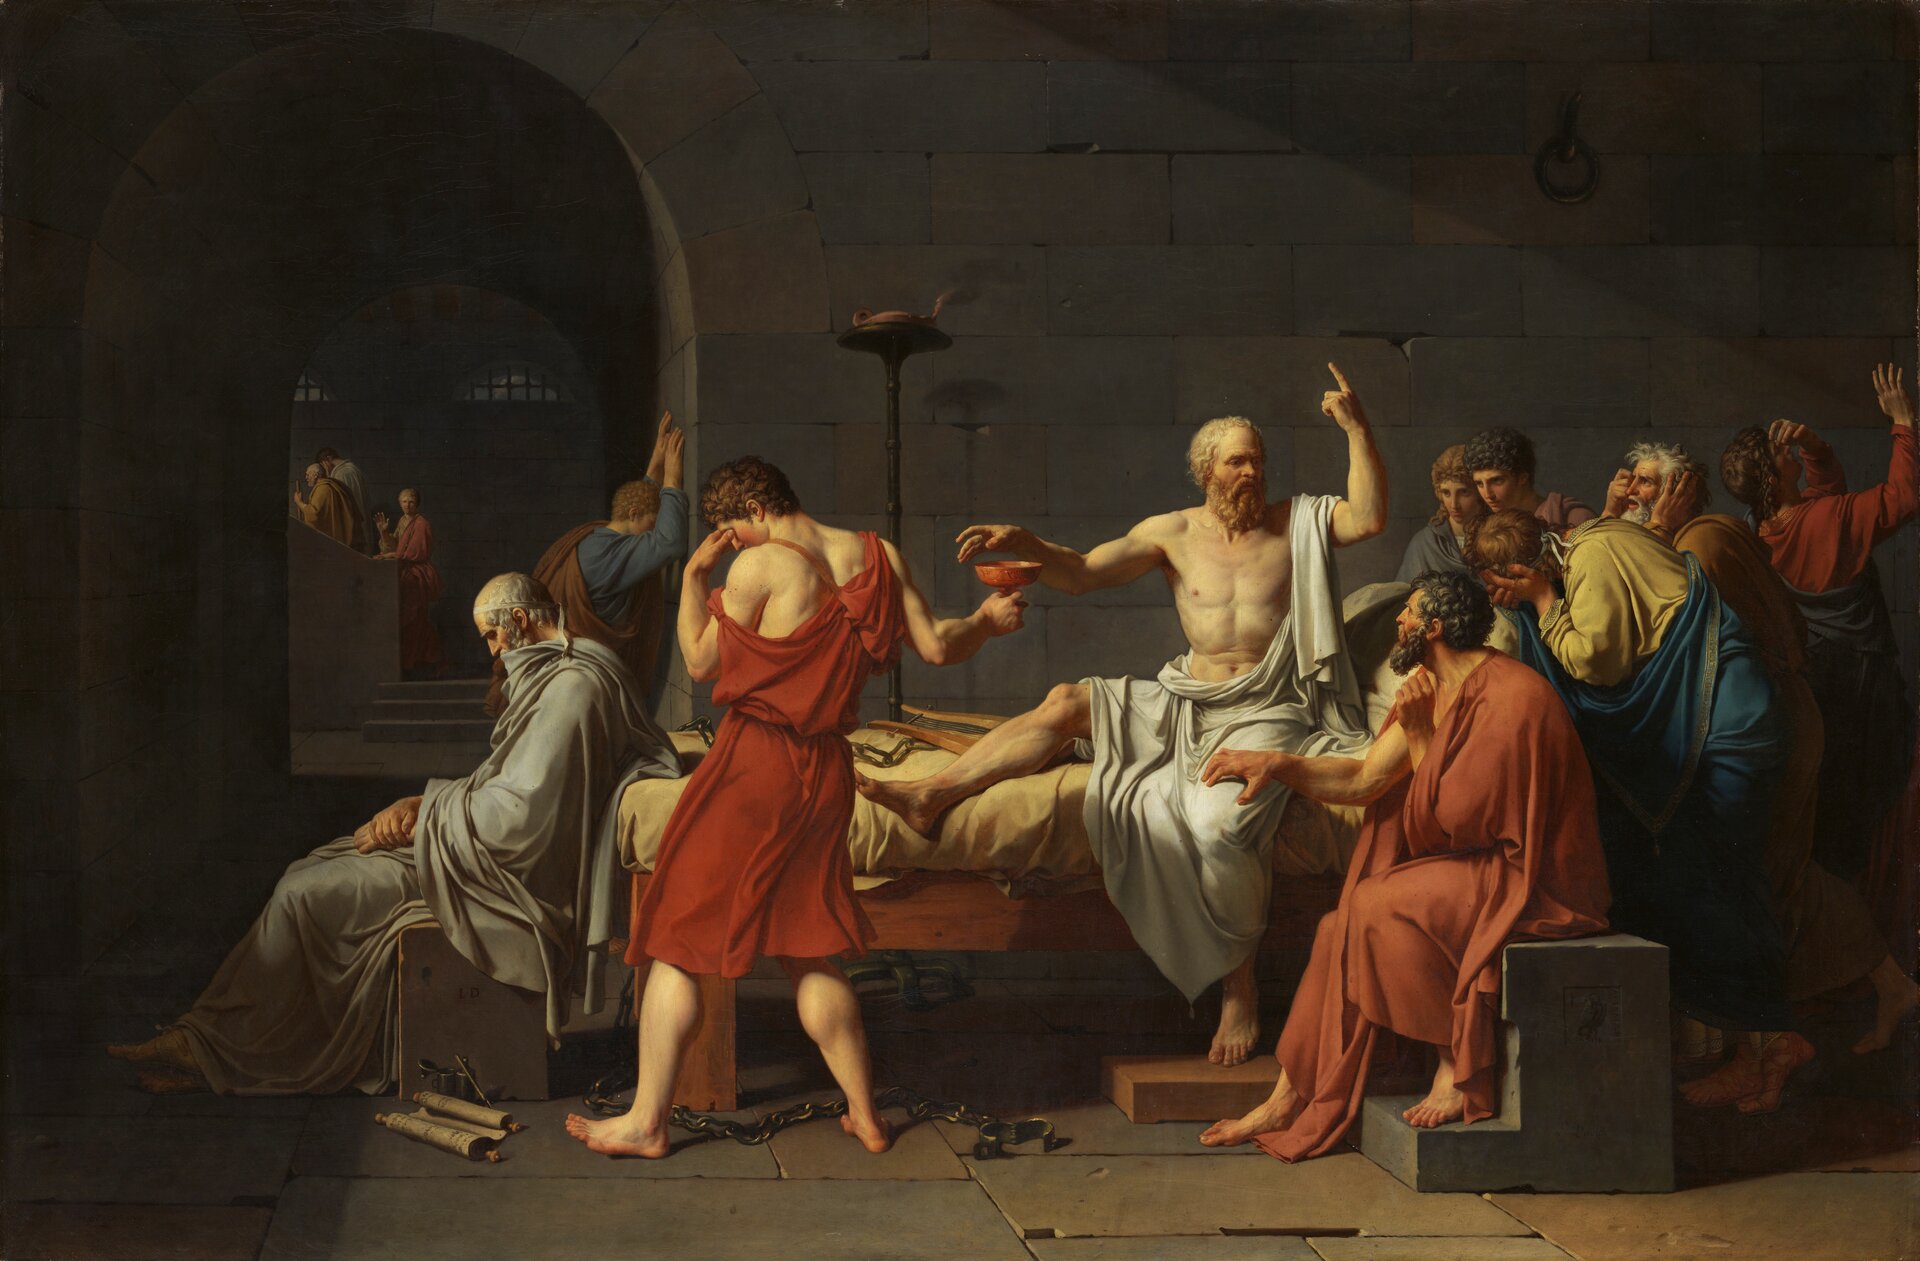 Kolorowa ilustracja przedstawia dzieło Jeana Luisa Davida pt. „Śmierć Sokratesa”. W centrum obrazu widnieje postać filozofa siedzącego na łożu. Przez ramię oraz tułów ma przerzuconą białą szatę. Łoże otaczają jego uczniowie. Jeden , odziany w czerwoną szatę, odwrócony bokiem do nauczyciela, podaje mu kielich z cykutą. Sokrates sięga po truciznę, drugą rękę zaś unosi do góry. Rozmawia z uczniami, którzy wsłuchani są w jego słowa.